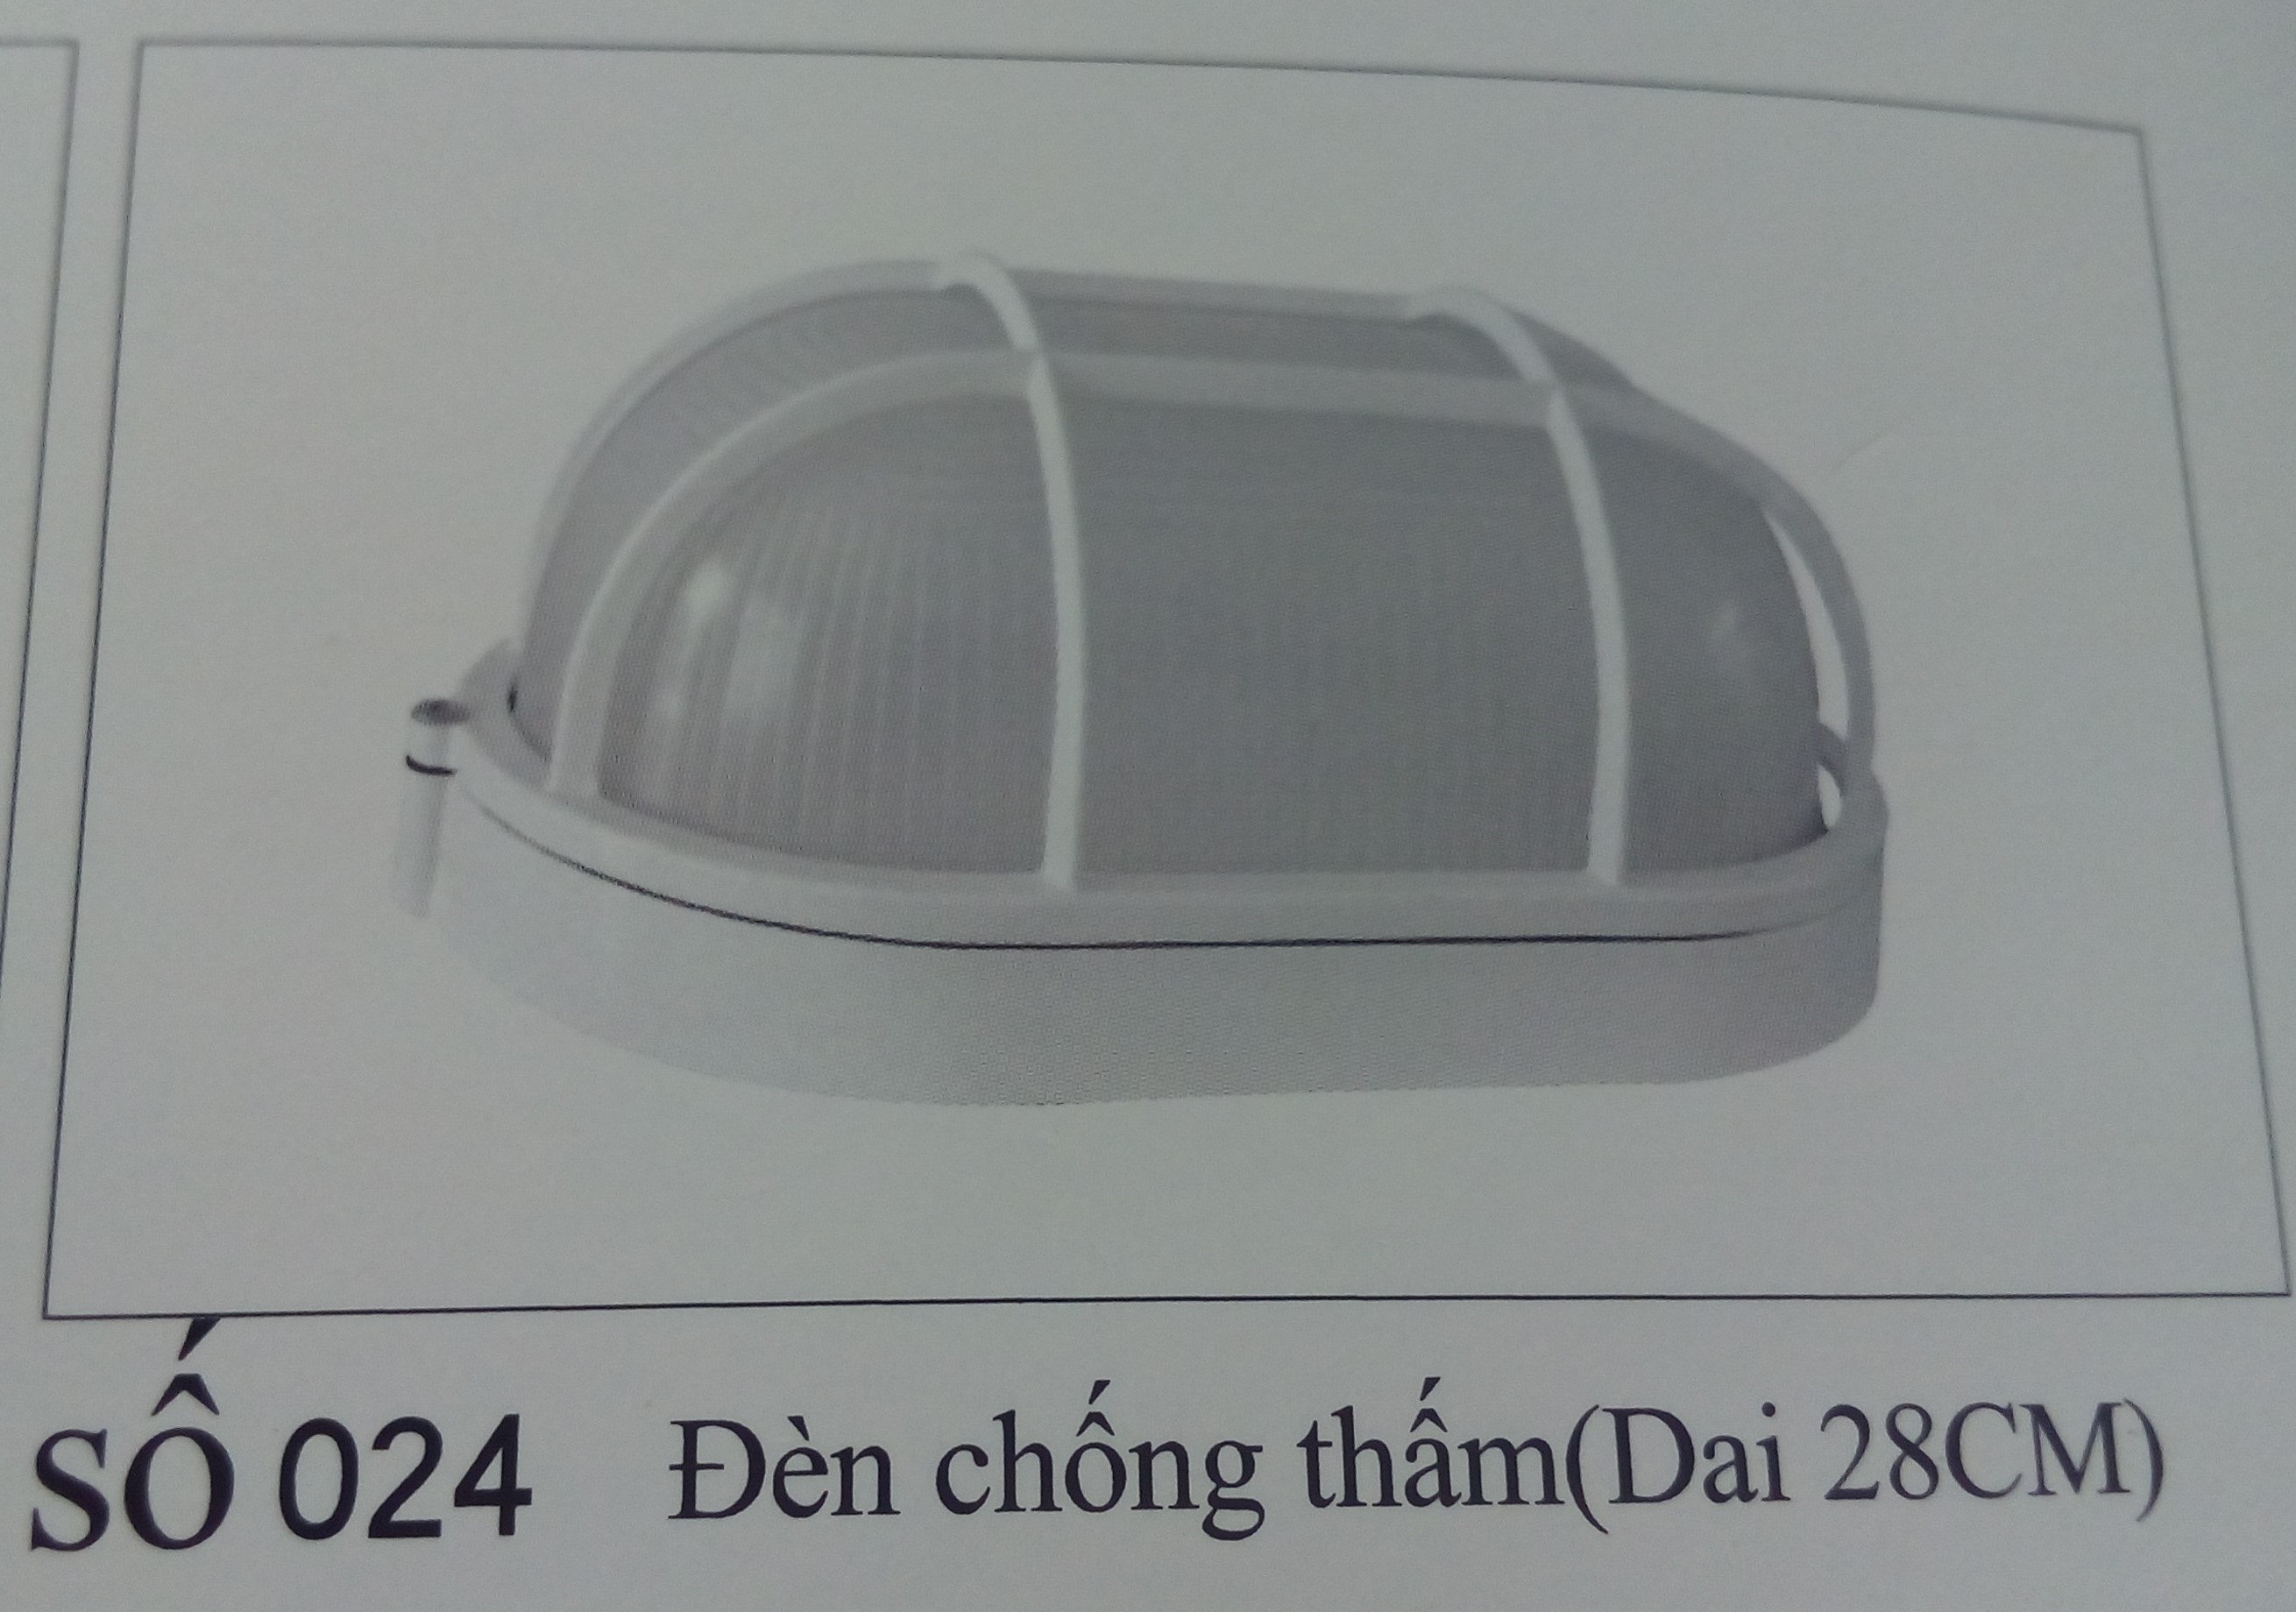 den-chong-tham-dai-28cm